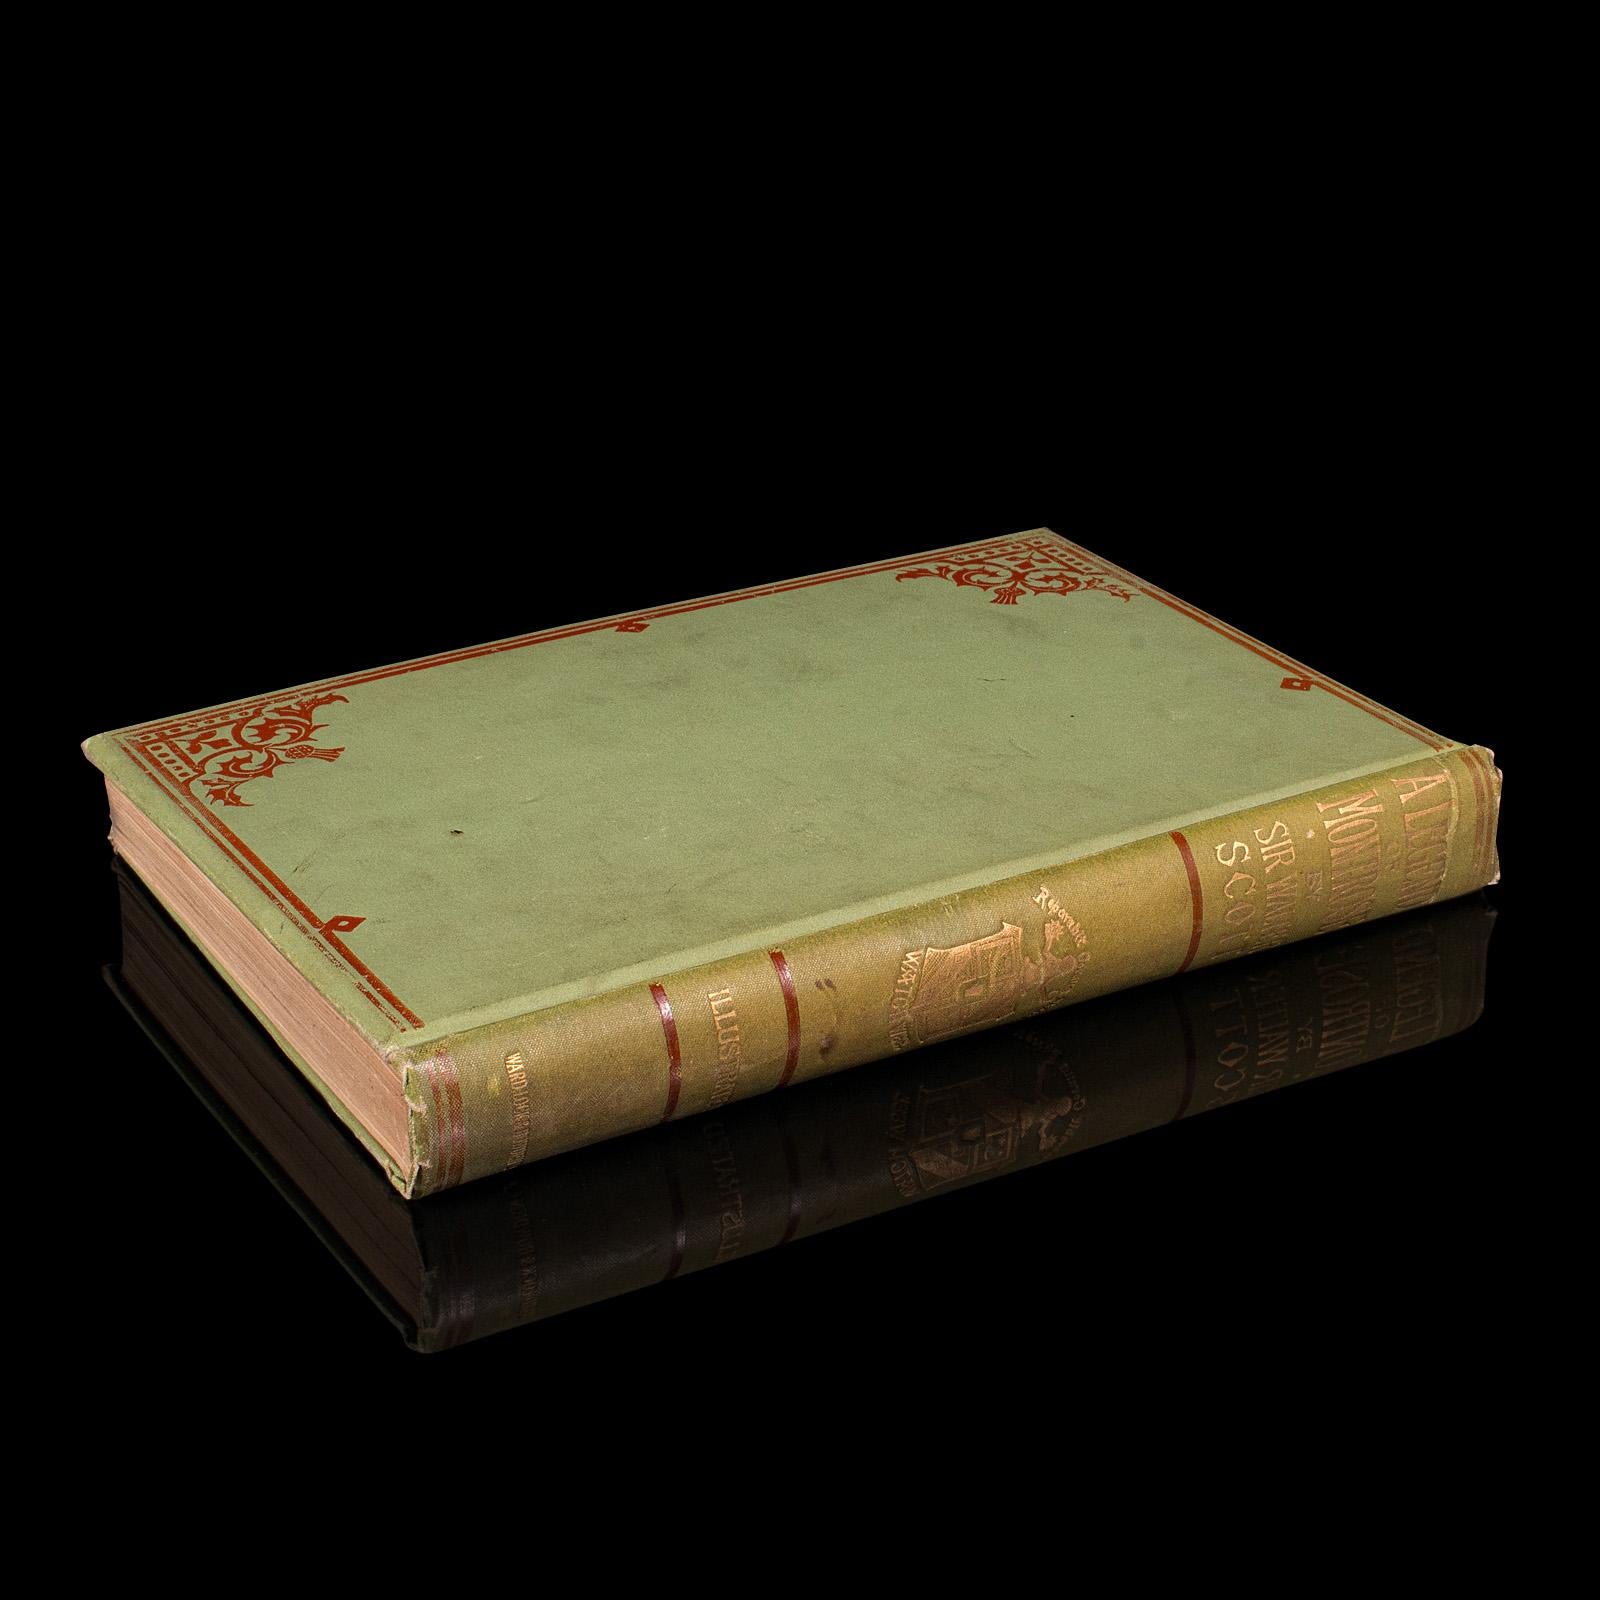 
Il s'agit d'un roman ancien, A Legend of Montrose, de Sir Walter Scott. Livre anglais relié d'intérêt écossais, datant de la période victorienne, publié en 1896.

Auteur écossais de premier plan, Sir Walter Scott (1771 - 1832) est bien connu pour